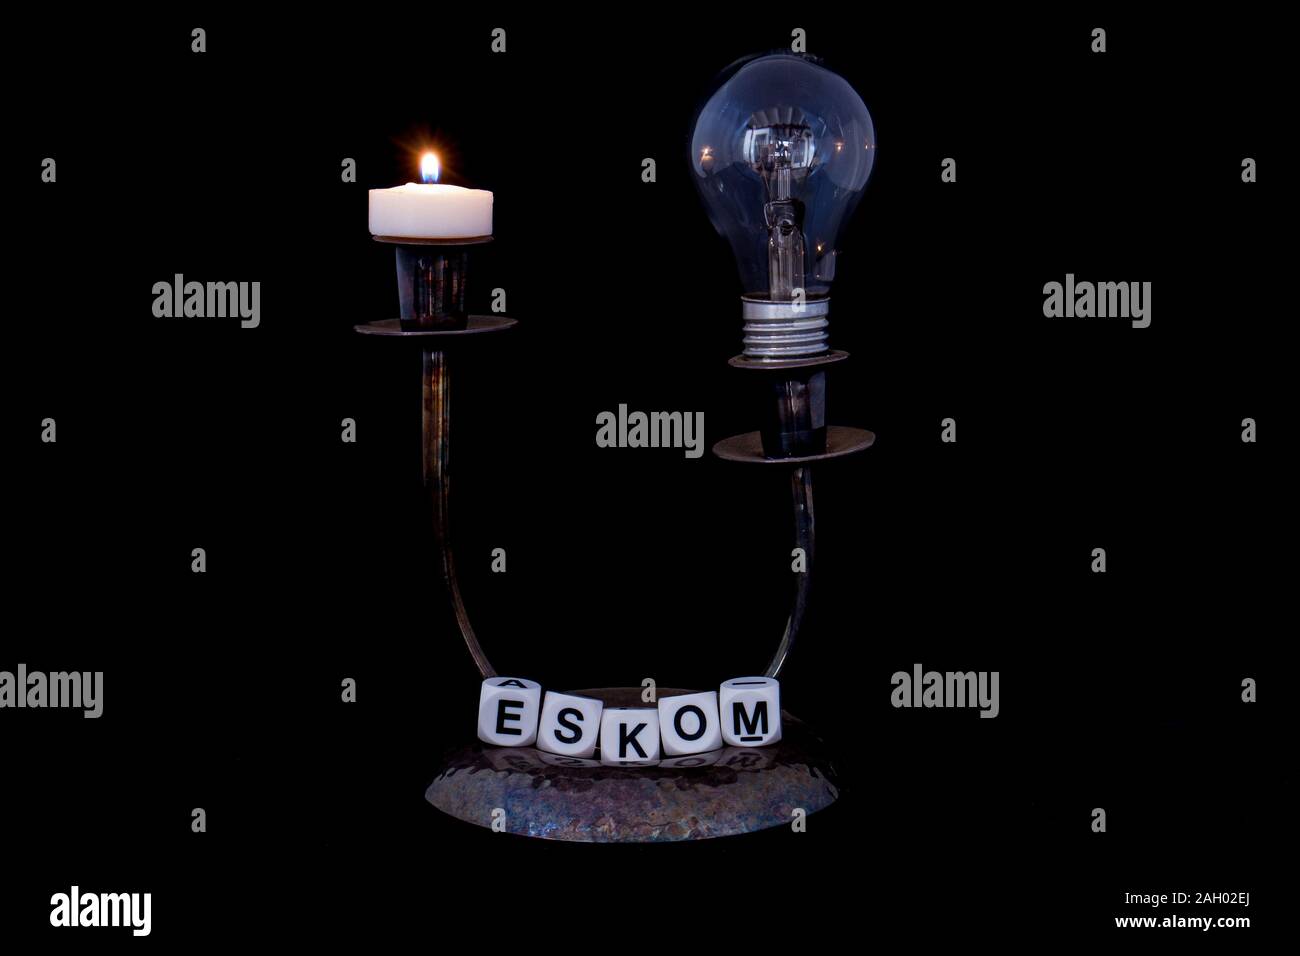 Ein Kerzenhalter mit einer abgesicherten elektrischen Glühbirne eine Kerze und den Namen Eskom auf schwarzem Hintergrund Bild im Querformat isoliert Stockfoto